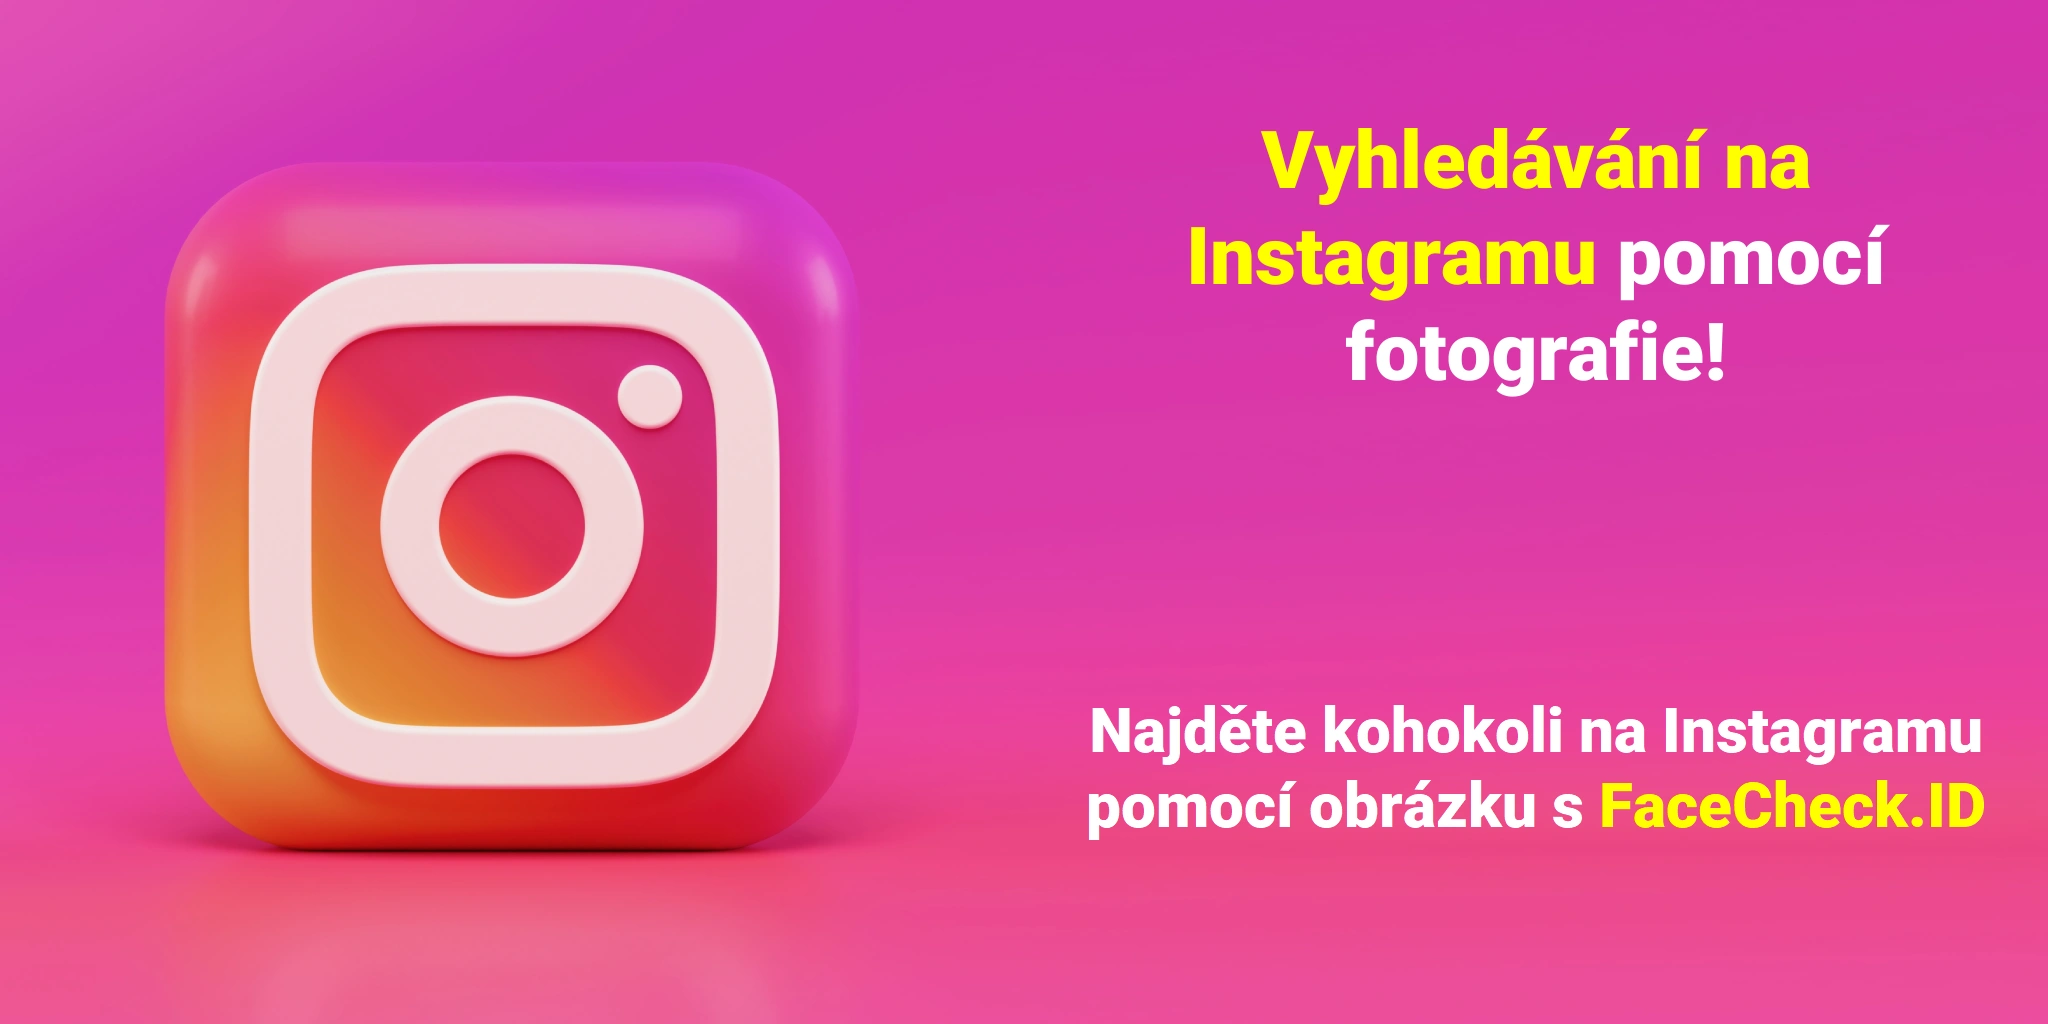 Vyhledávání na Instagramu pomocí fotografie! Najděte kohokoli na Instagramu pomocí obrázku s FaceCheck.ID